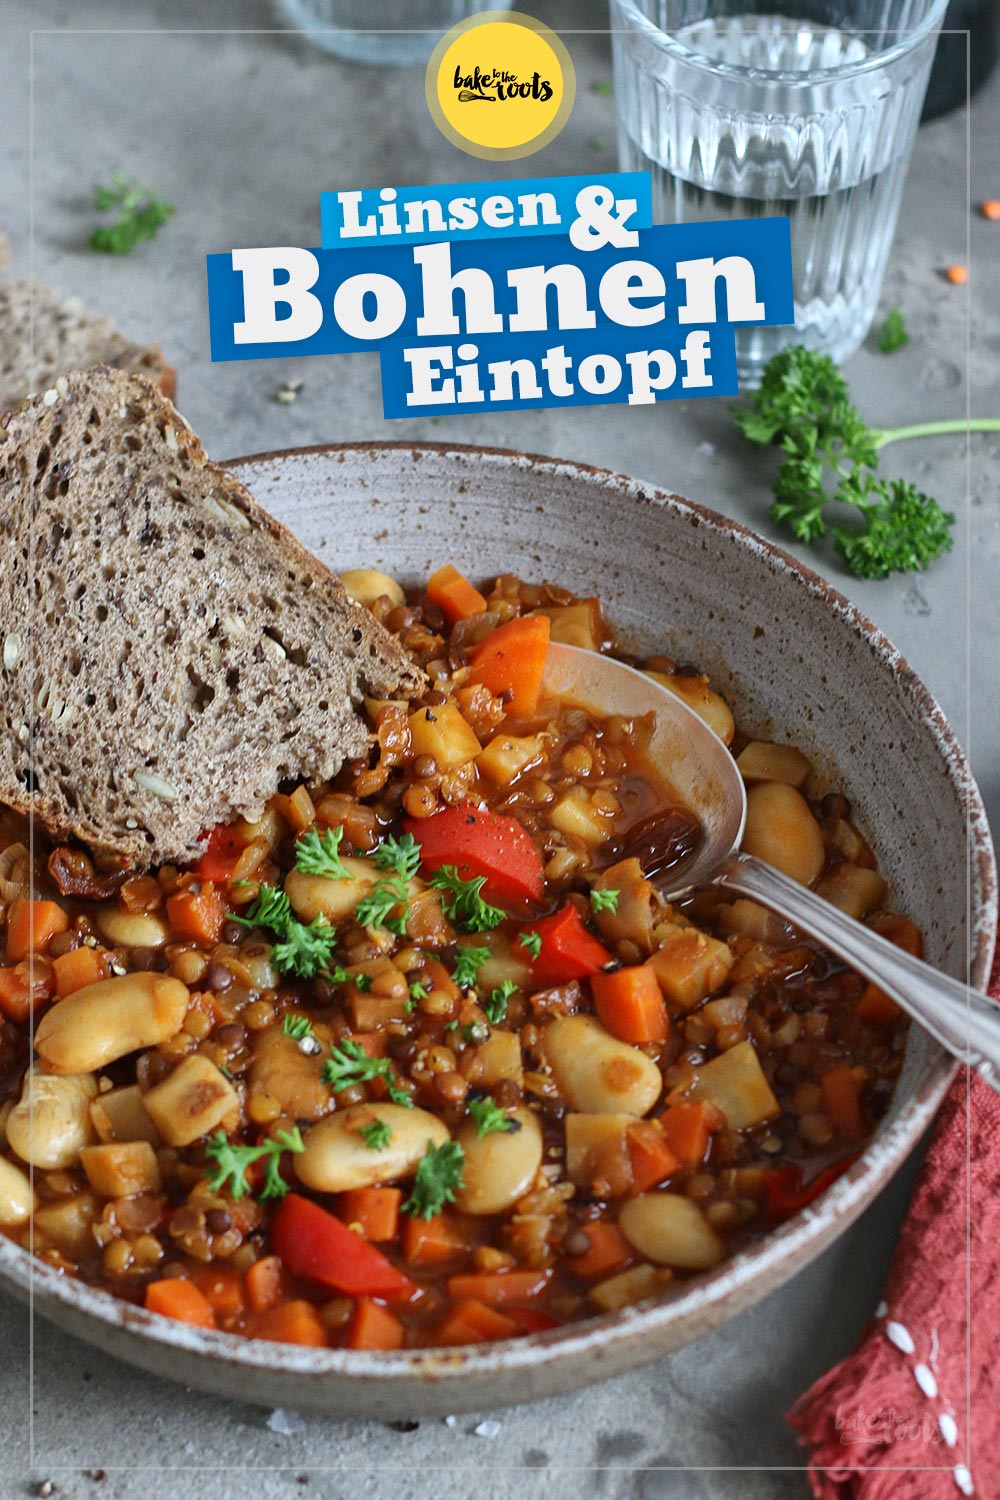 Veganer Linsen & Bohnen Eintopf | Bake to the roots